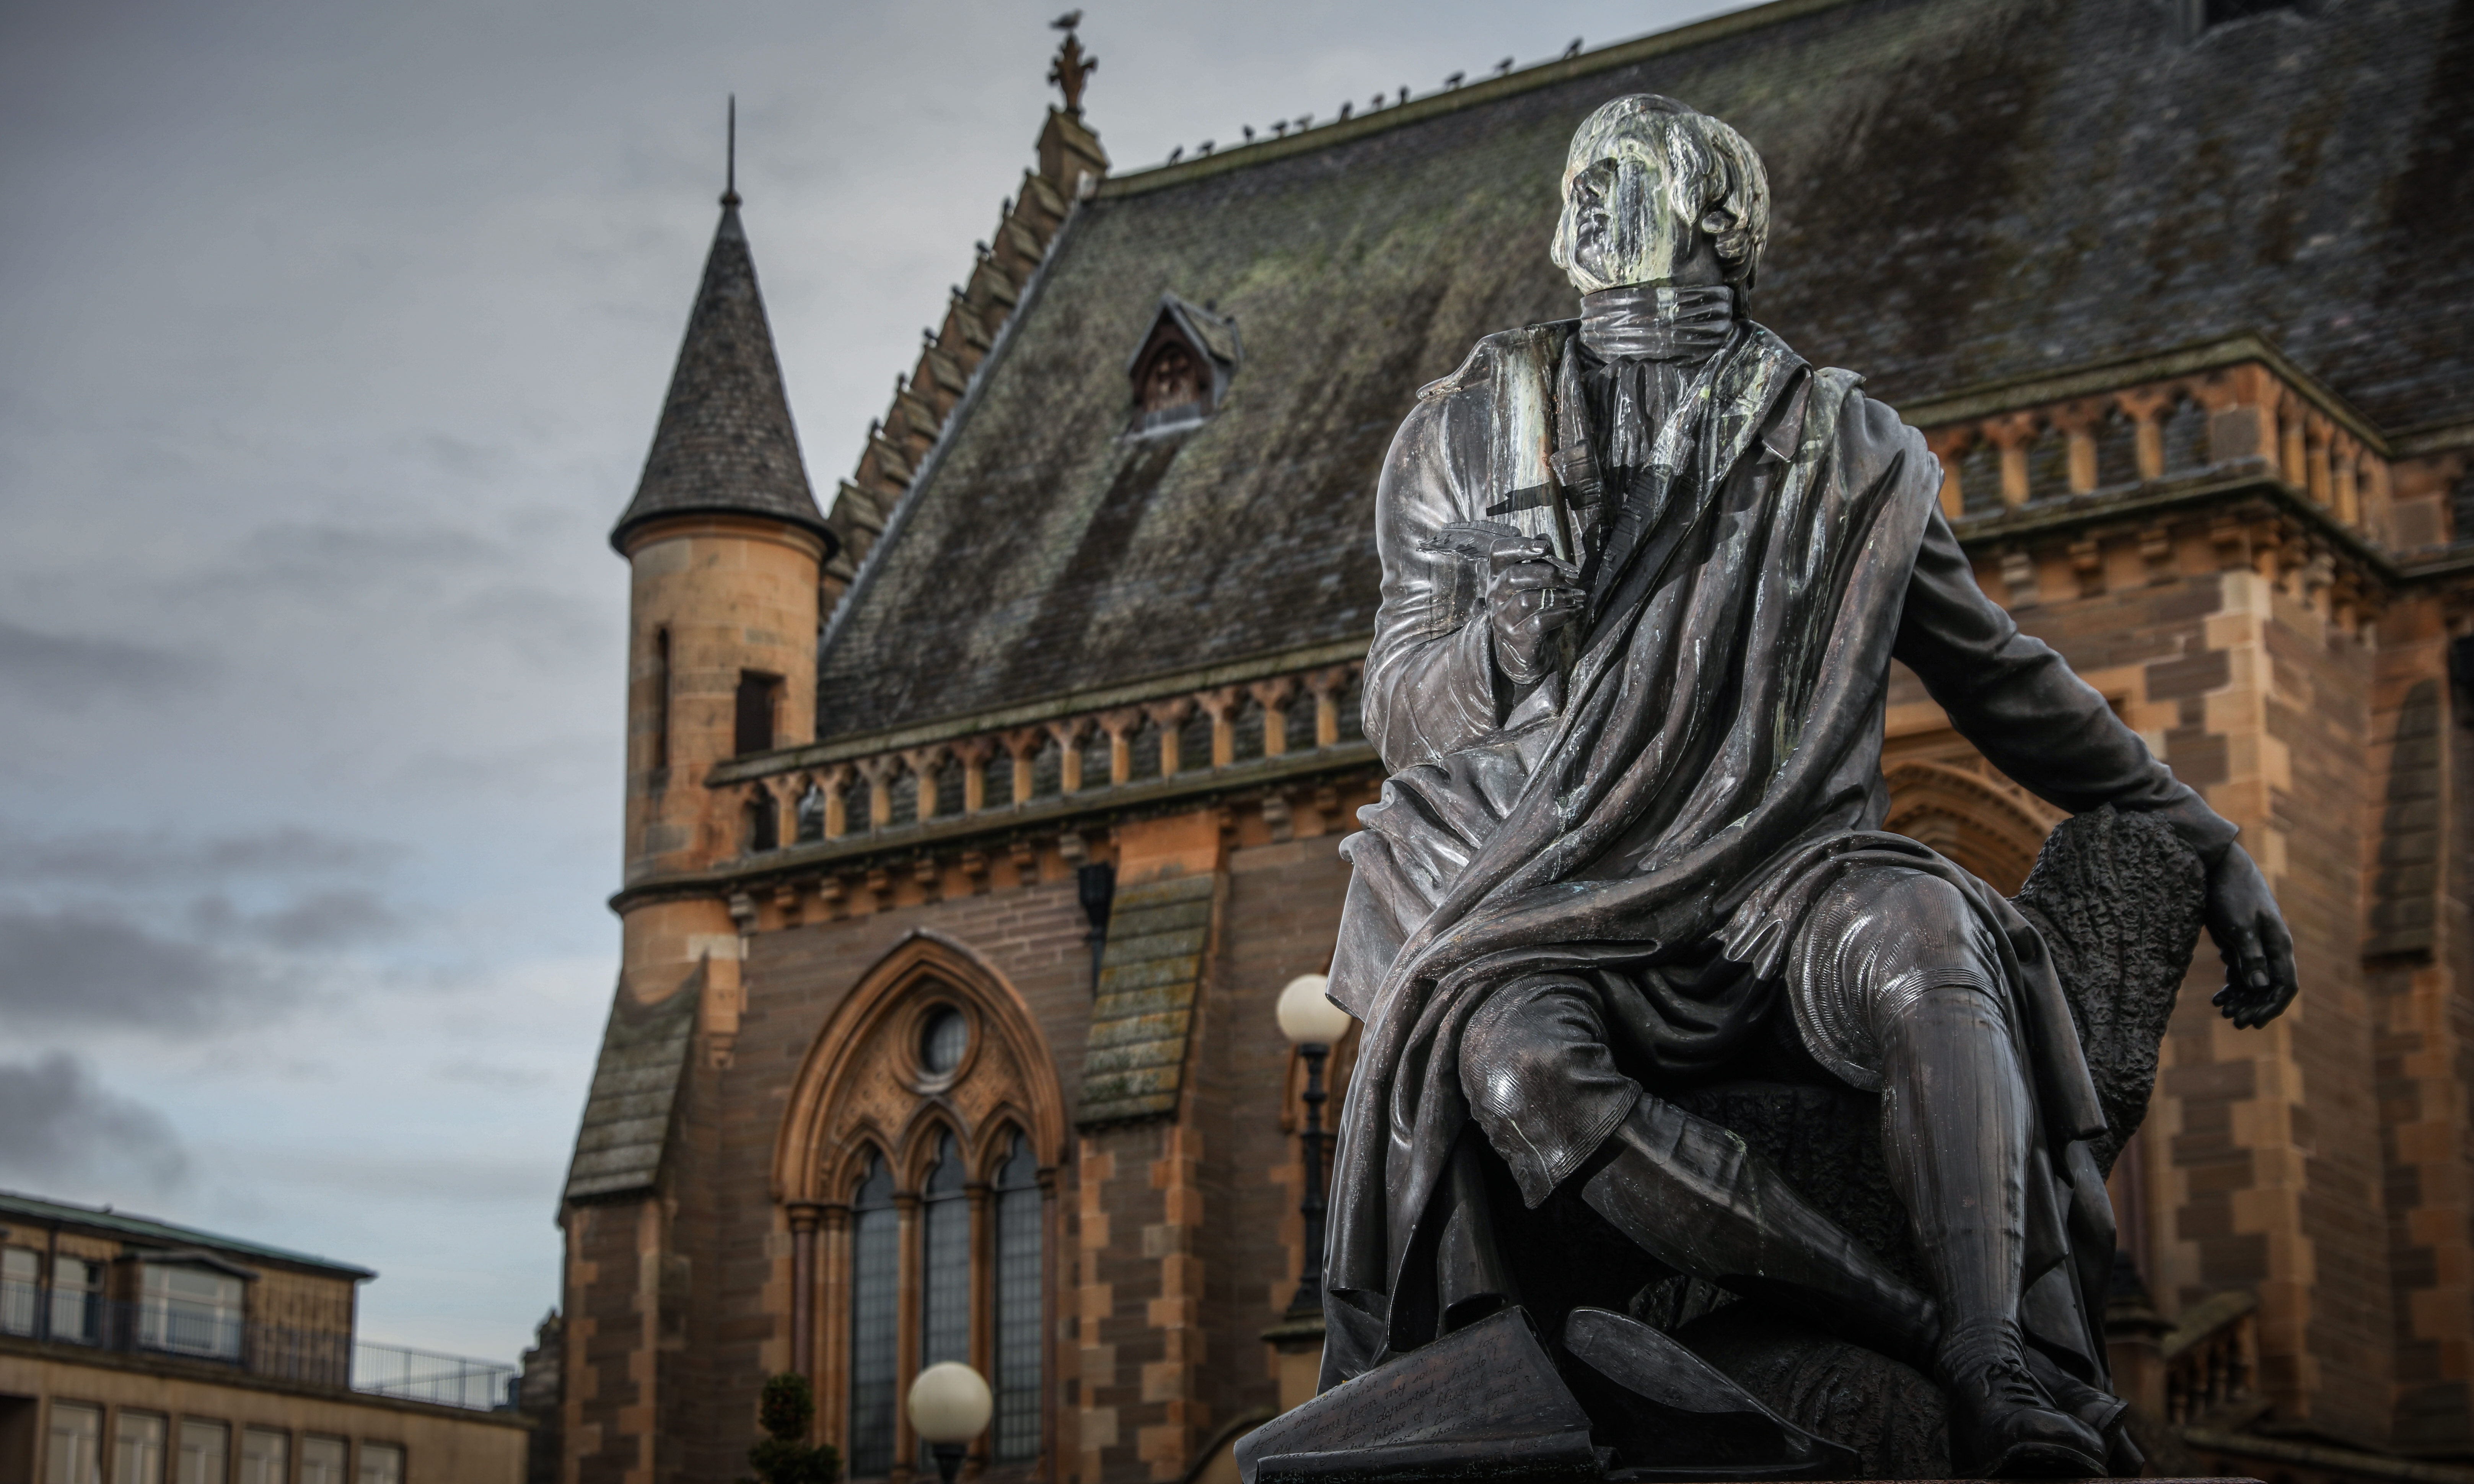 Robert Burns statue in Dundee.